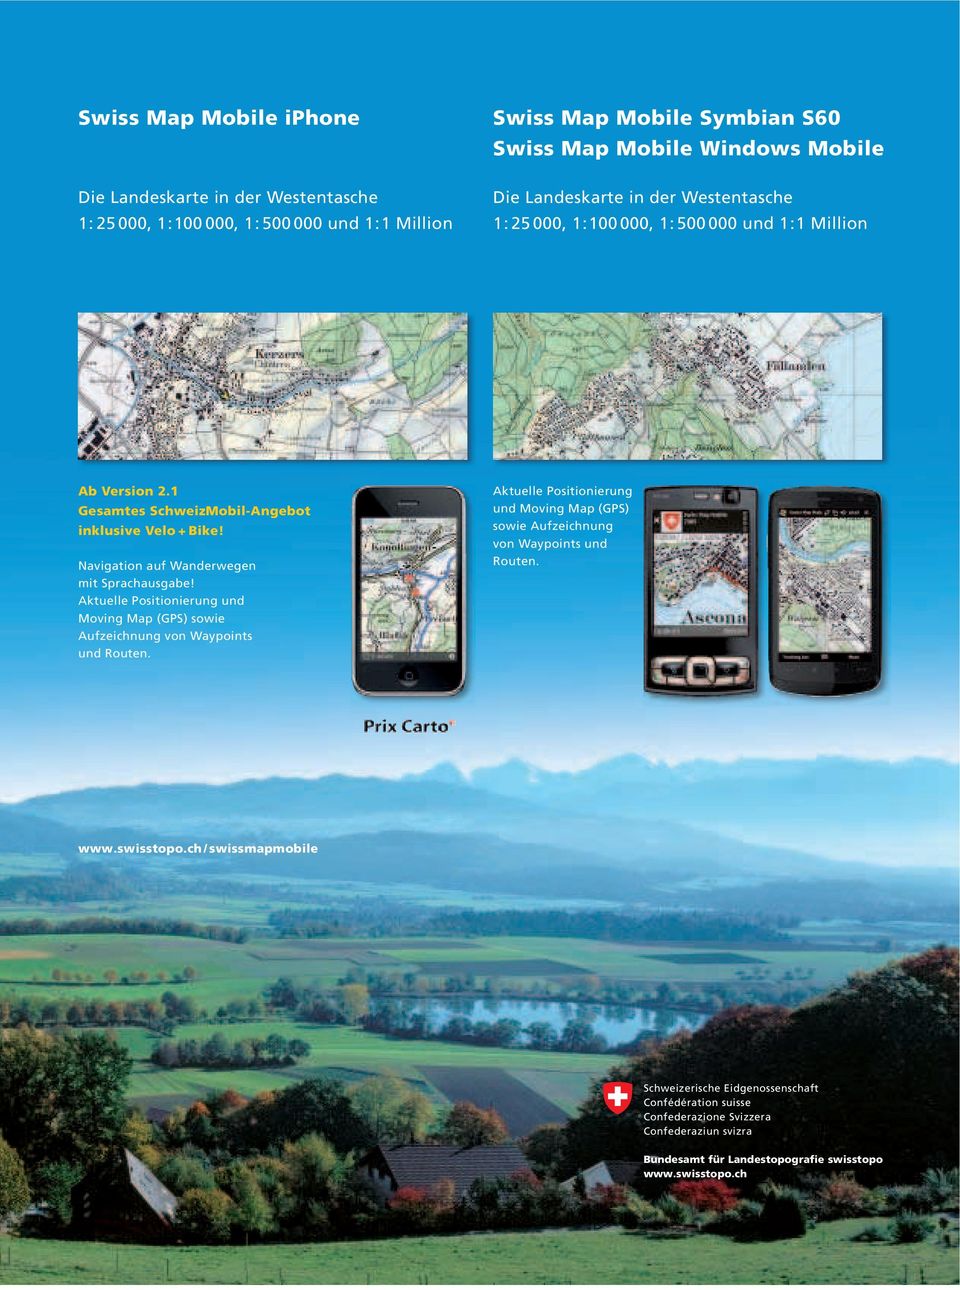 1 Gesamtes SchweizMobil-Angebot inklusive Velo + Bike! Navigation auf Wanderwegen mit Sprachausgabe!